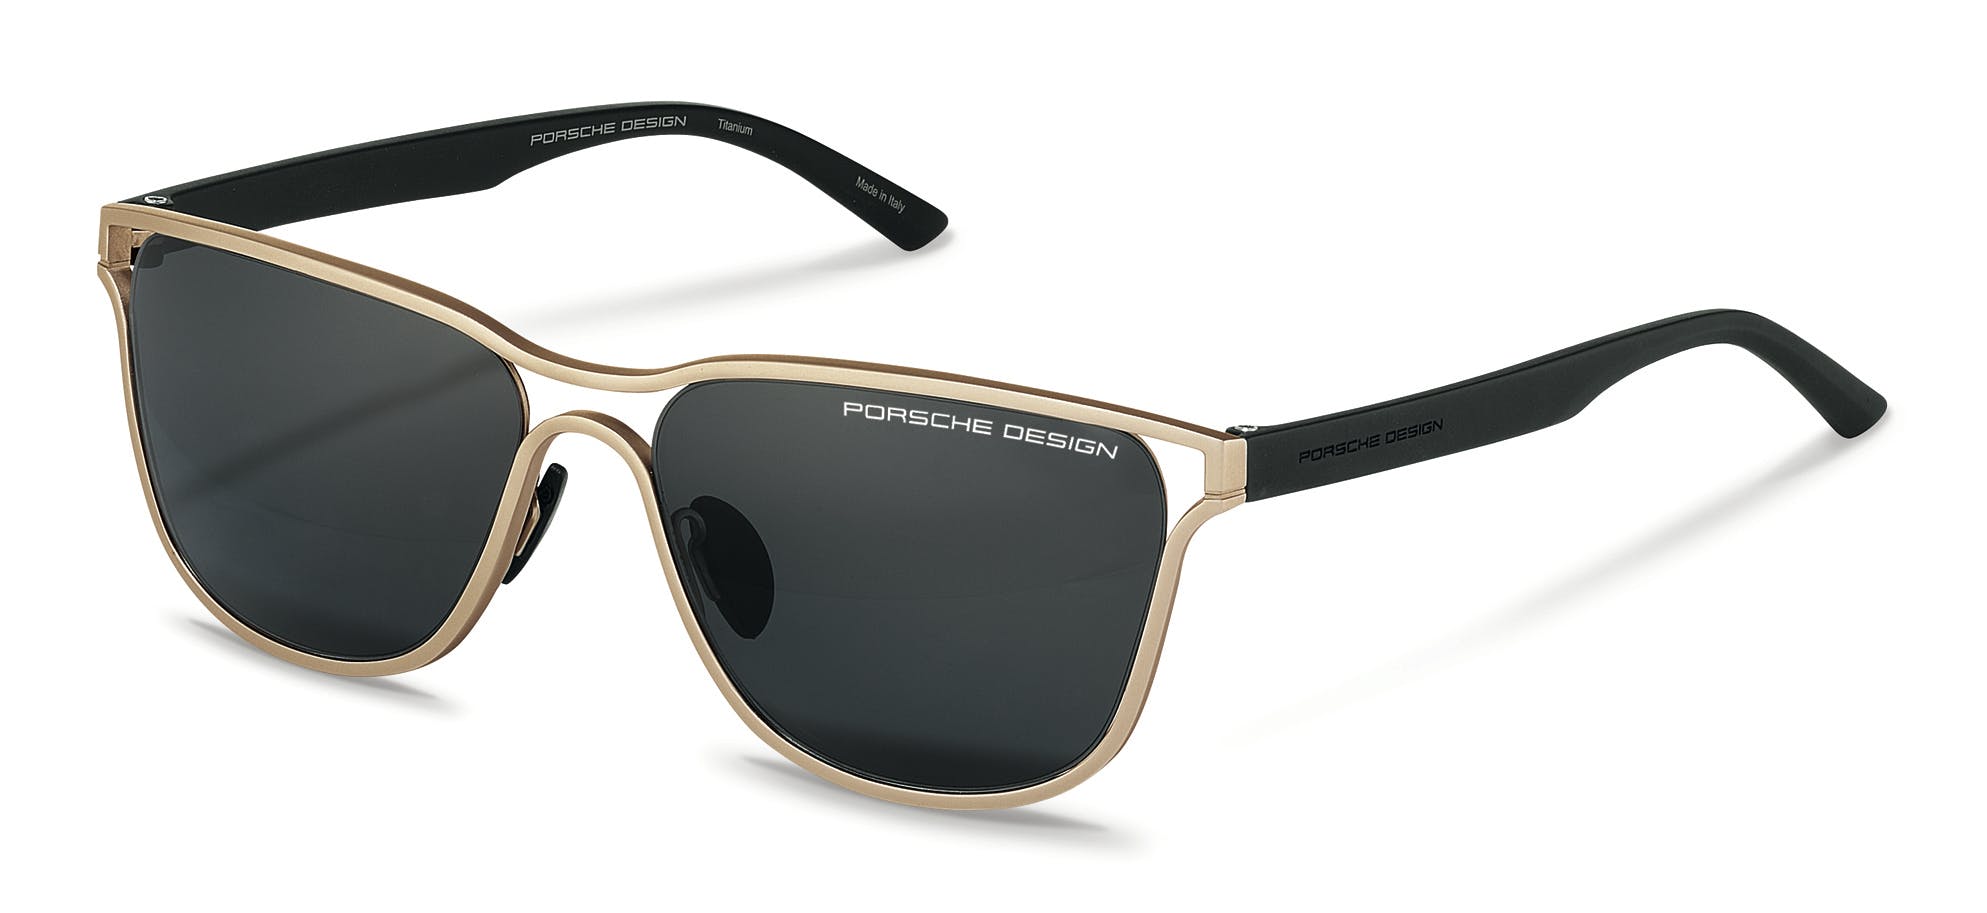 Porsche Design präsentiert Eyewear in Gold